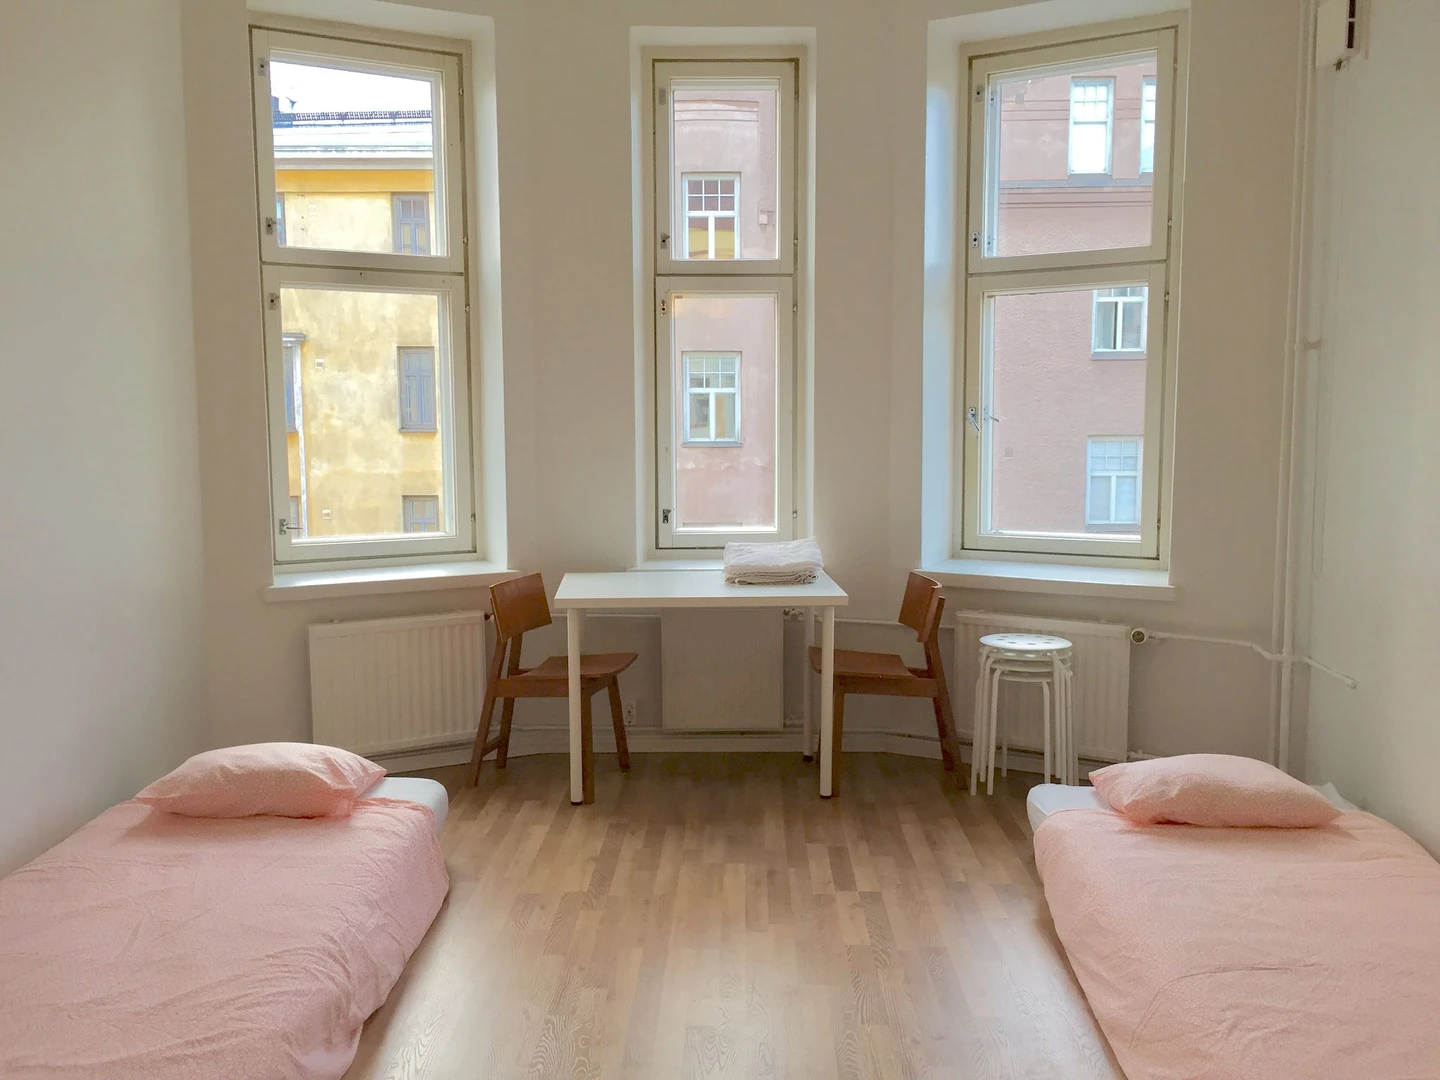 Gemeinsames Zimmer mit einem anderen Studierenden in Helsinki